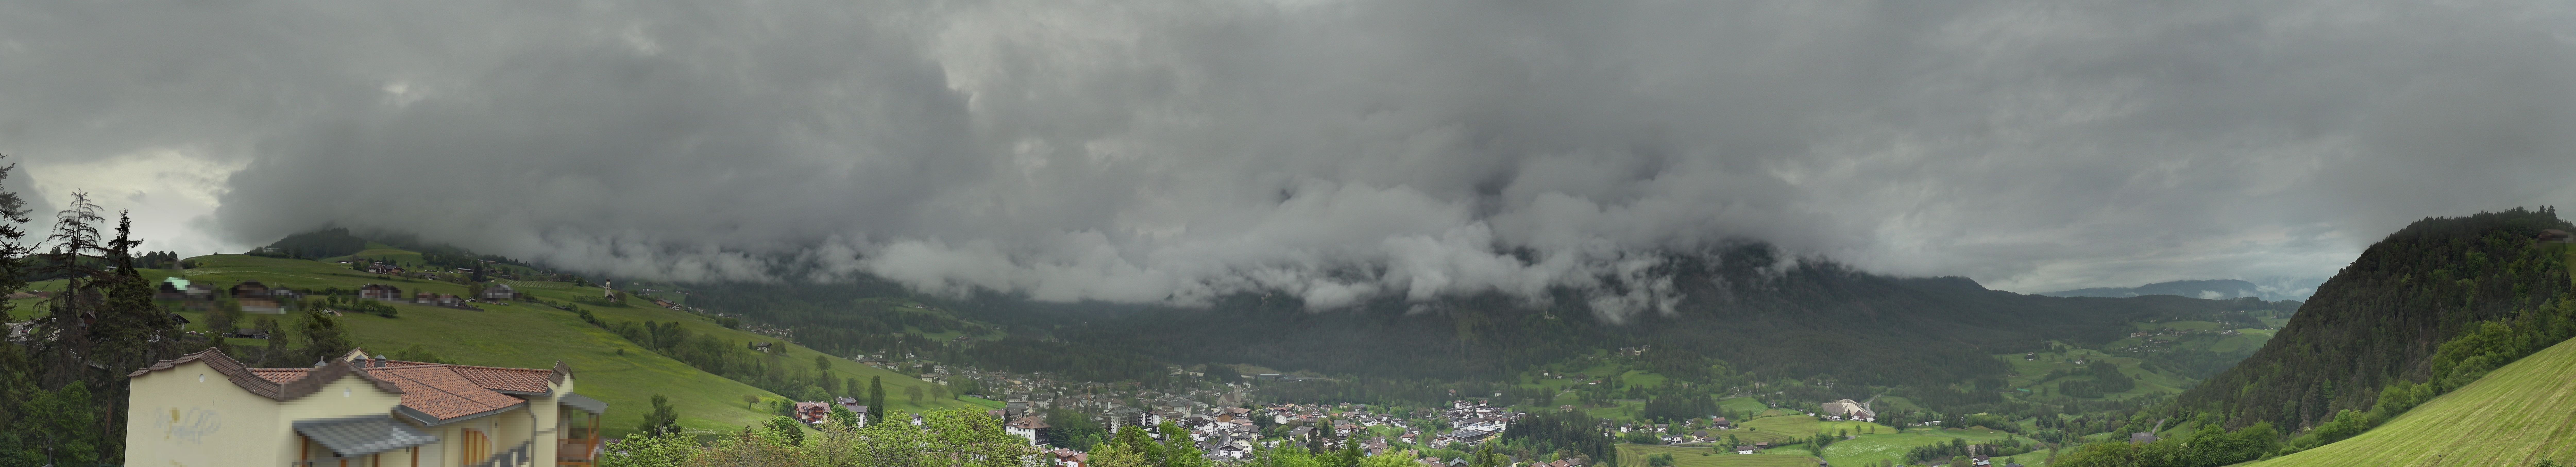 Webcam Panoramica Siusi allo Sciliar, Alpe di Siusi, Dolomiti Superski